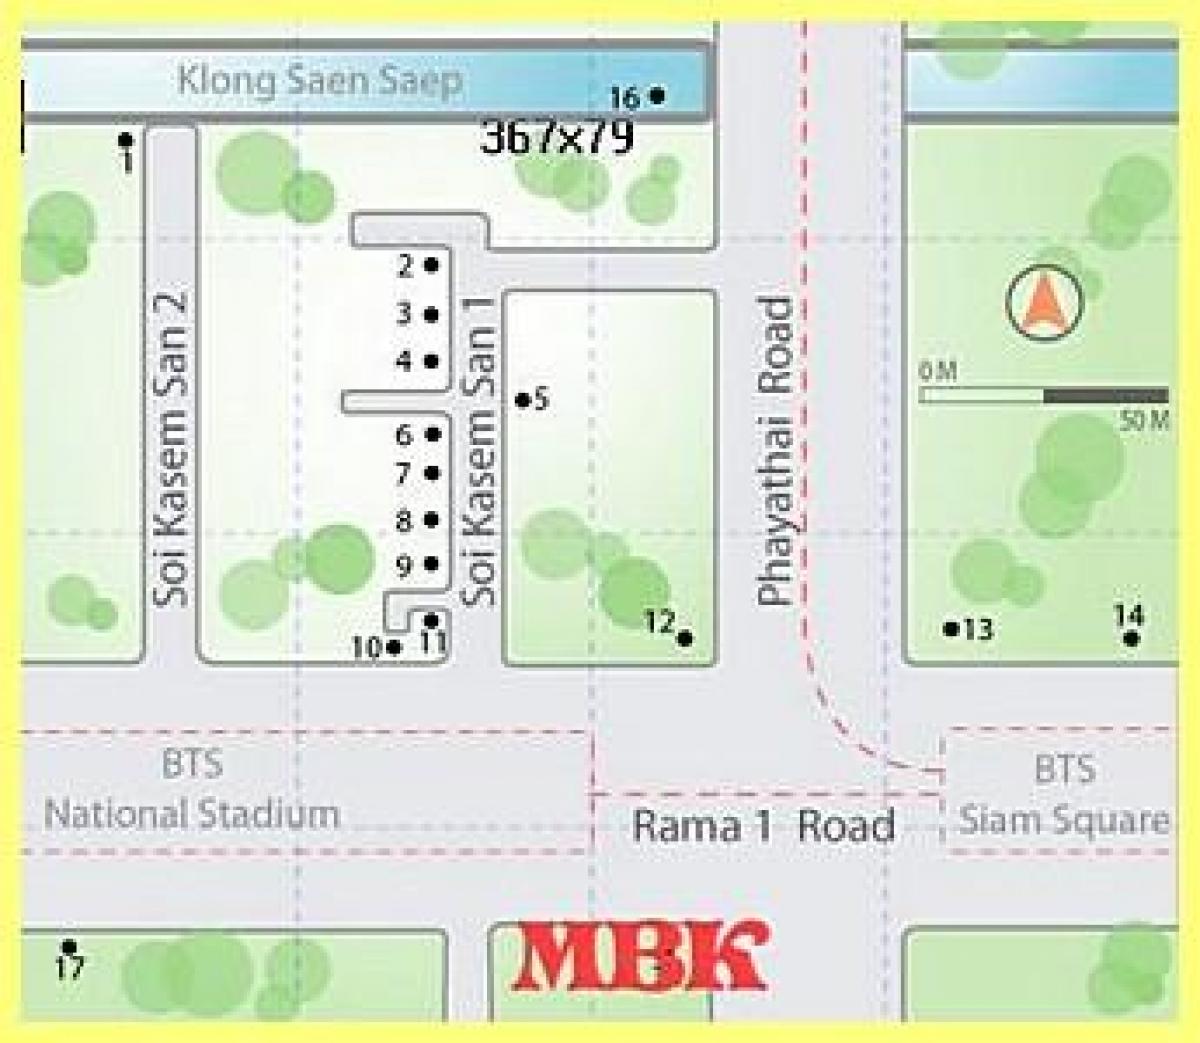 mbk erosketa mall bangkok mapa